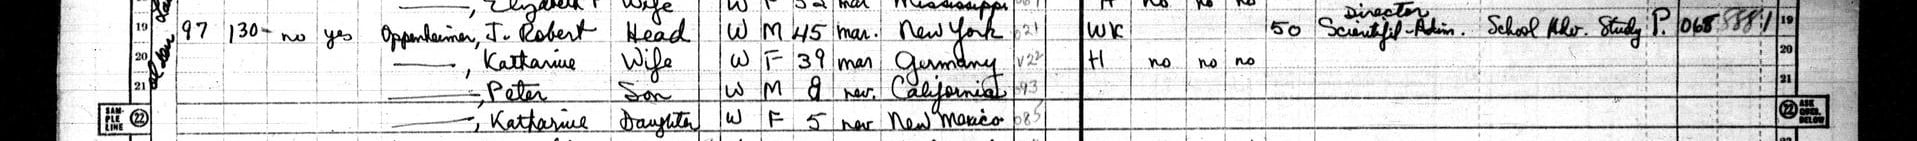 Oppenheimer i jego rodzina wymienieni w Spisie Powszechnym USA z 1950 r. na MyHeritage